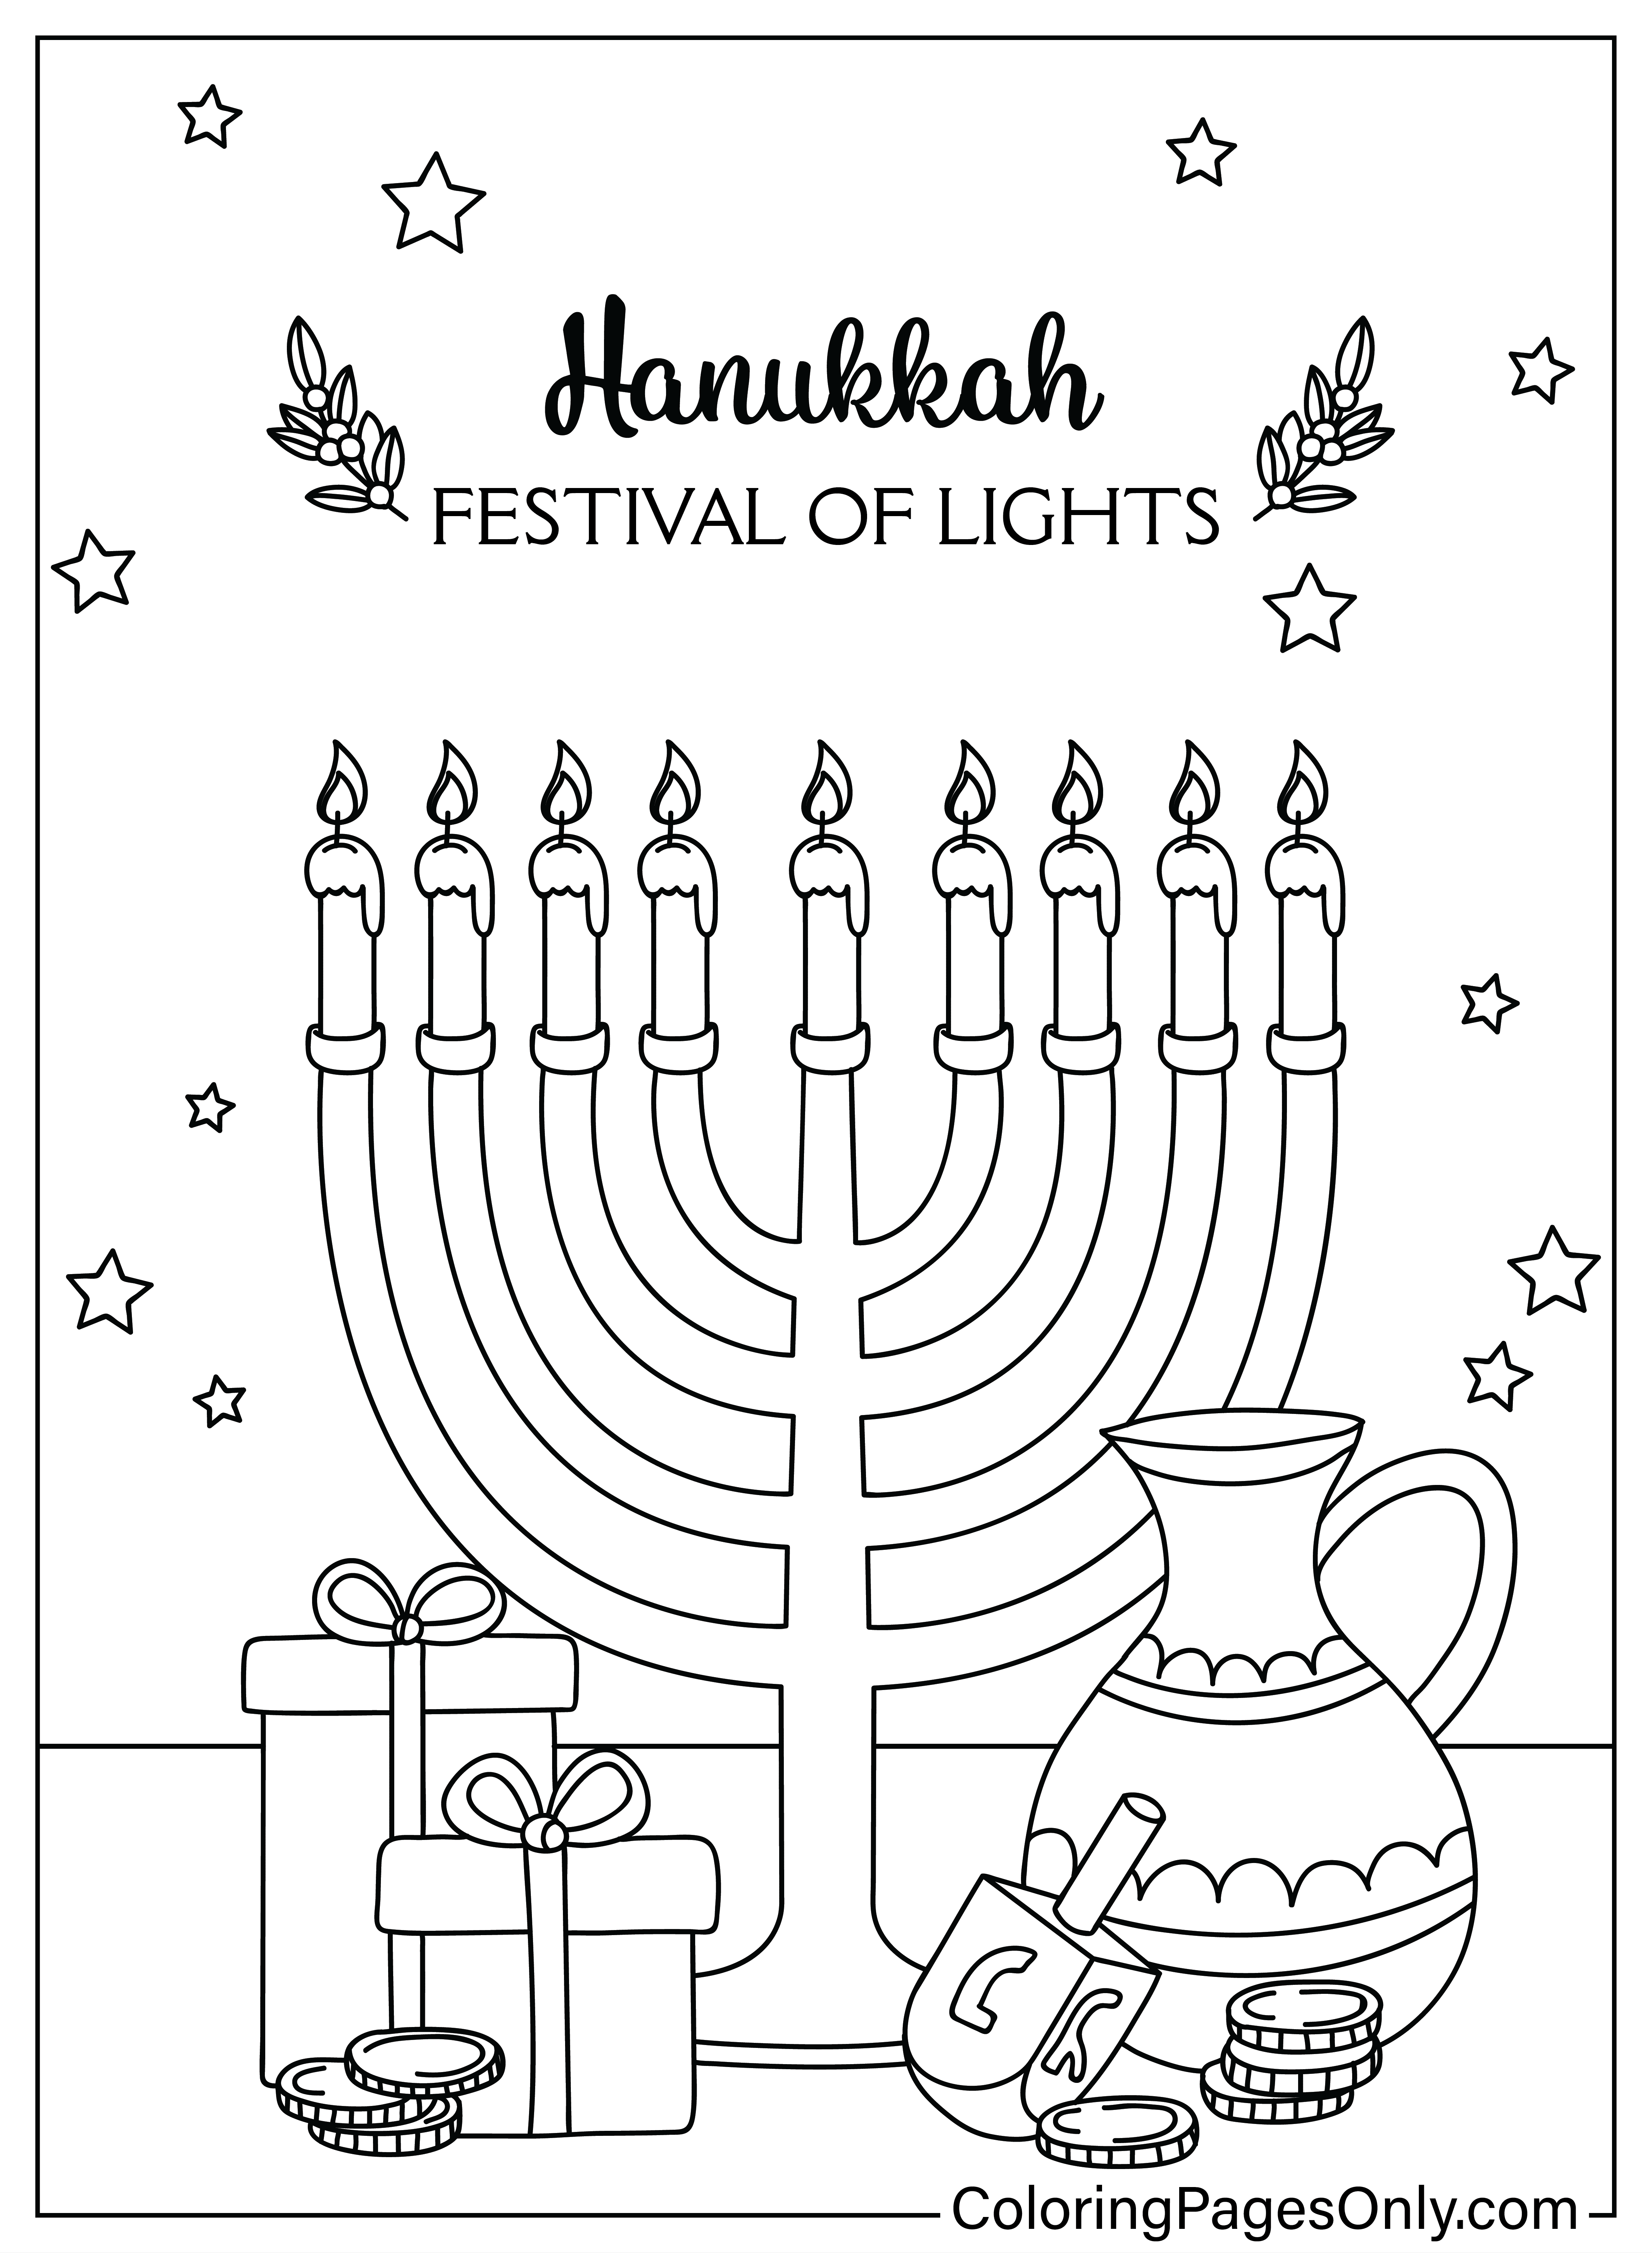 Página colorida de Hanukkah de Hanukkah